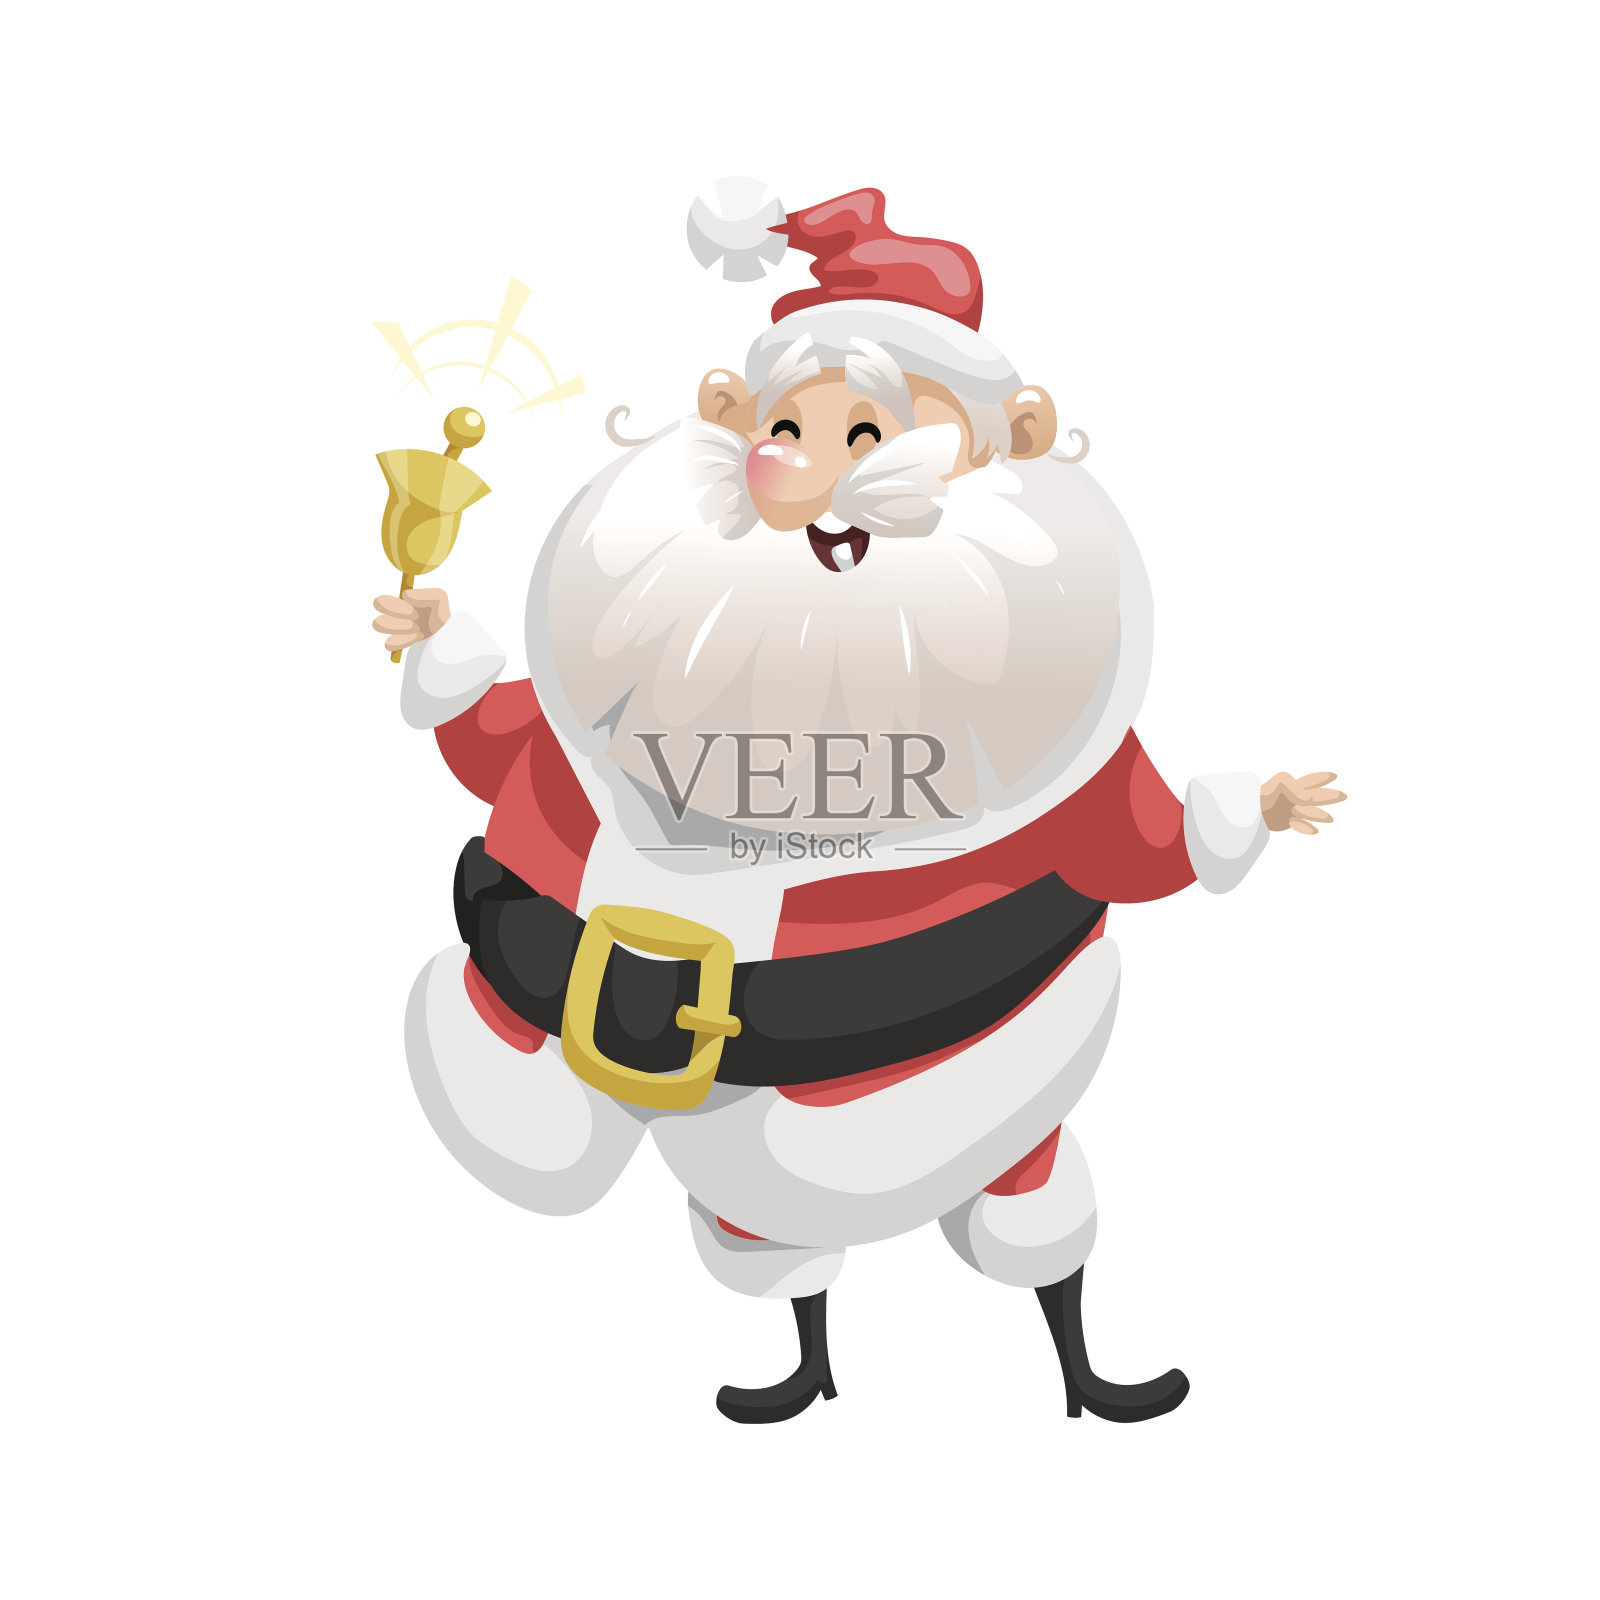 滑稽卡通风格笑圣诞老人与铃铛人物图标。情感插图。圣诞季节向量。简单的梯度艺术品。插画图片素材